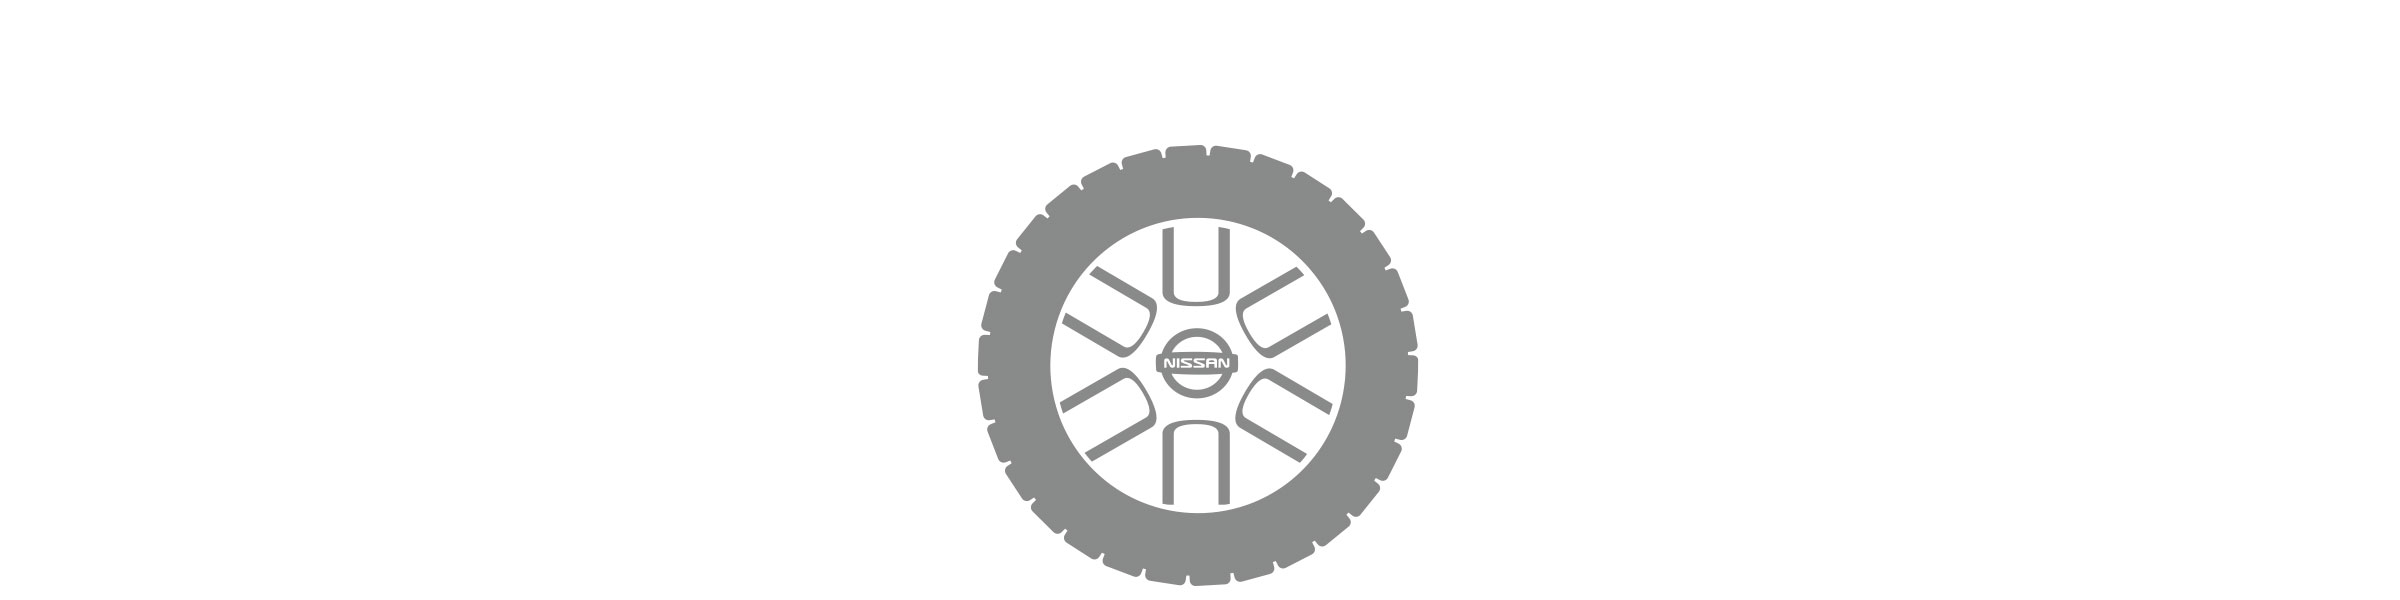 Tire Pressire Monitoring System